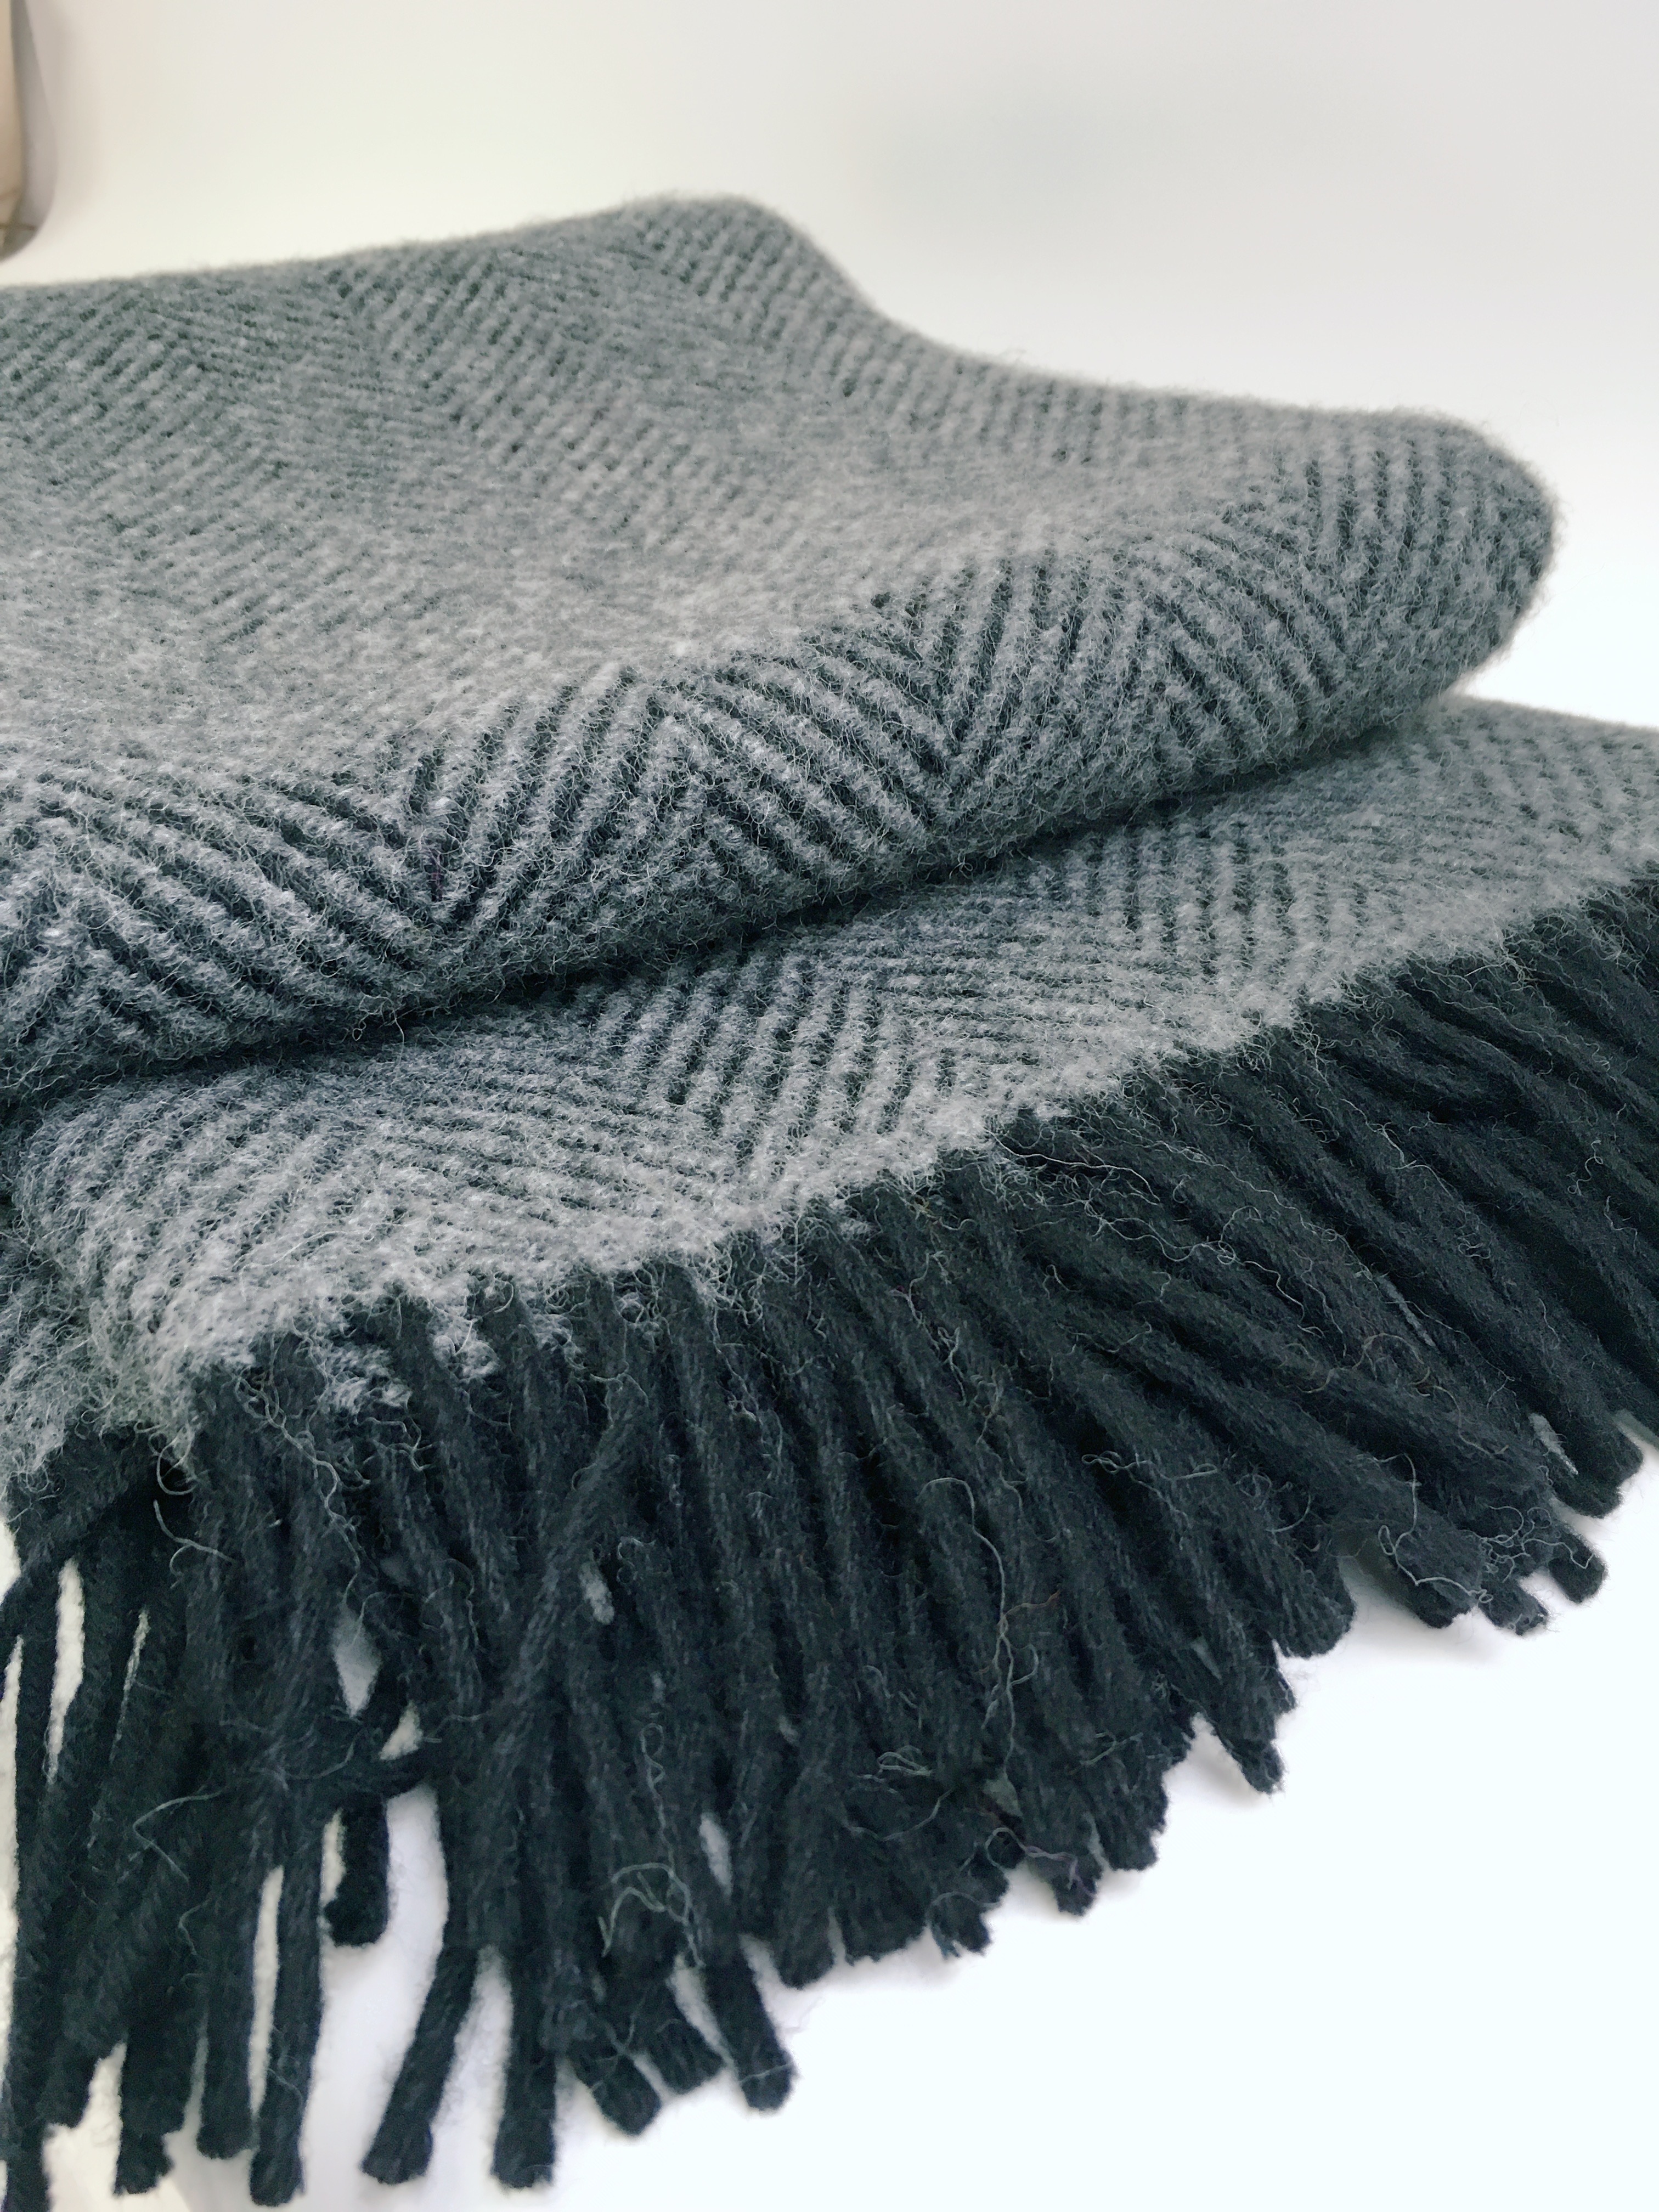 D&T Blanket Wool Herringbone Black Gray FB 05